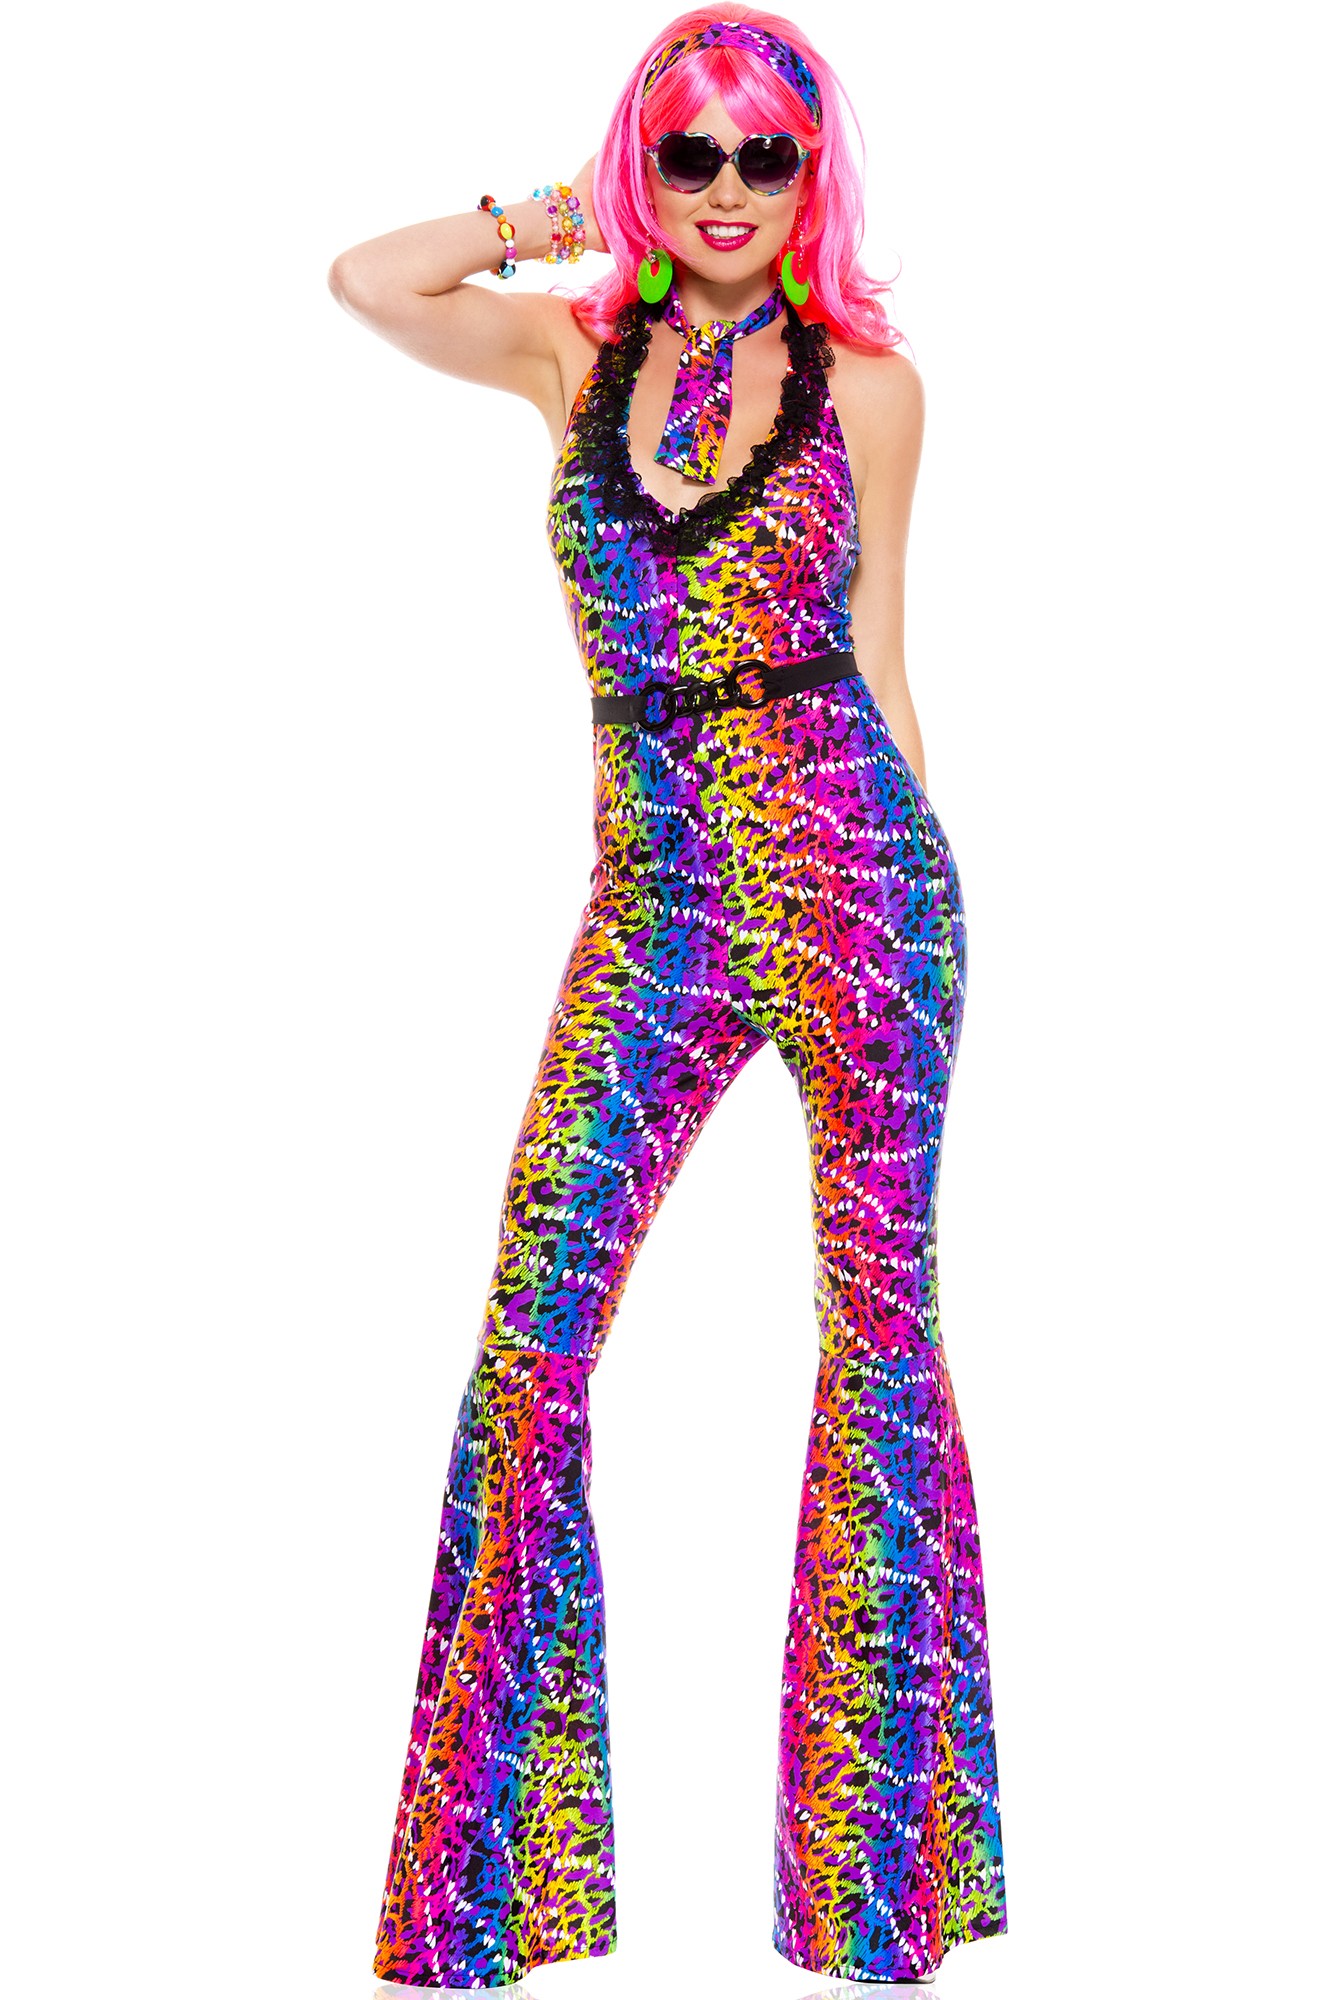 Стиль диско в одежде для женщин фото